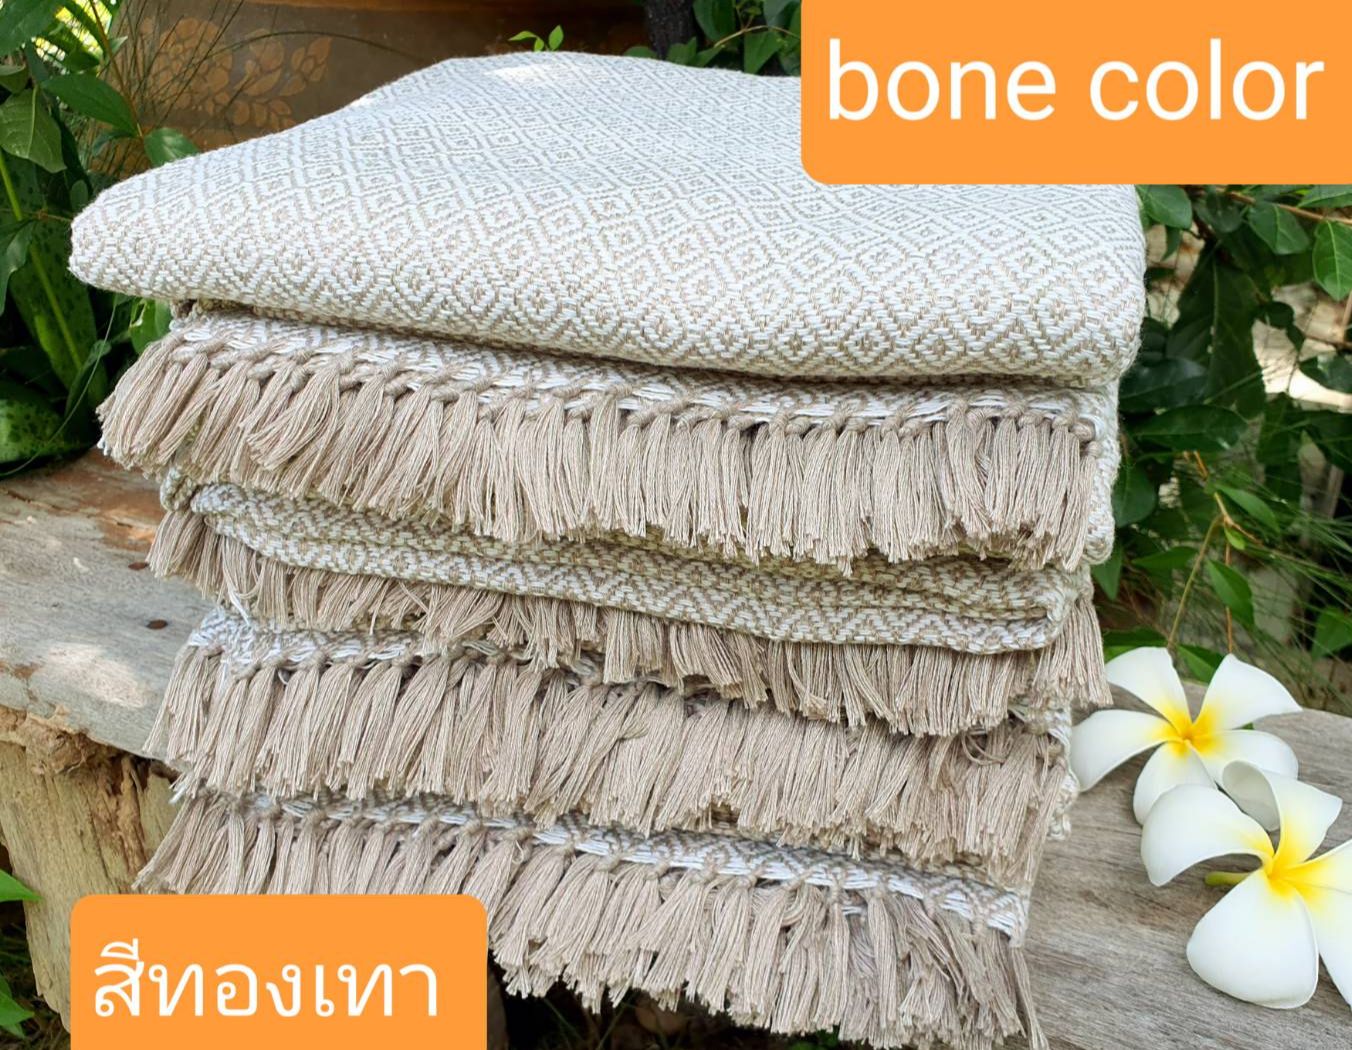 Bone color (brownish color)  105*210cm   ผ้าทอมือ  ผ้าห่ม ผ้าฝ้ายทอมือ    Hand woven cotton blanket  ผ้าทอมือ  ของรับไหว้ ผ้า  ของที่ระลึก